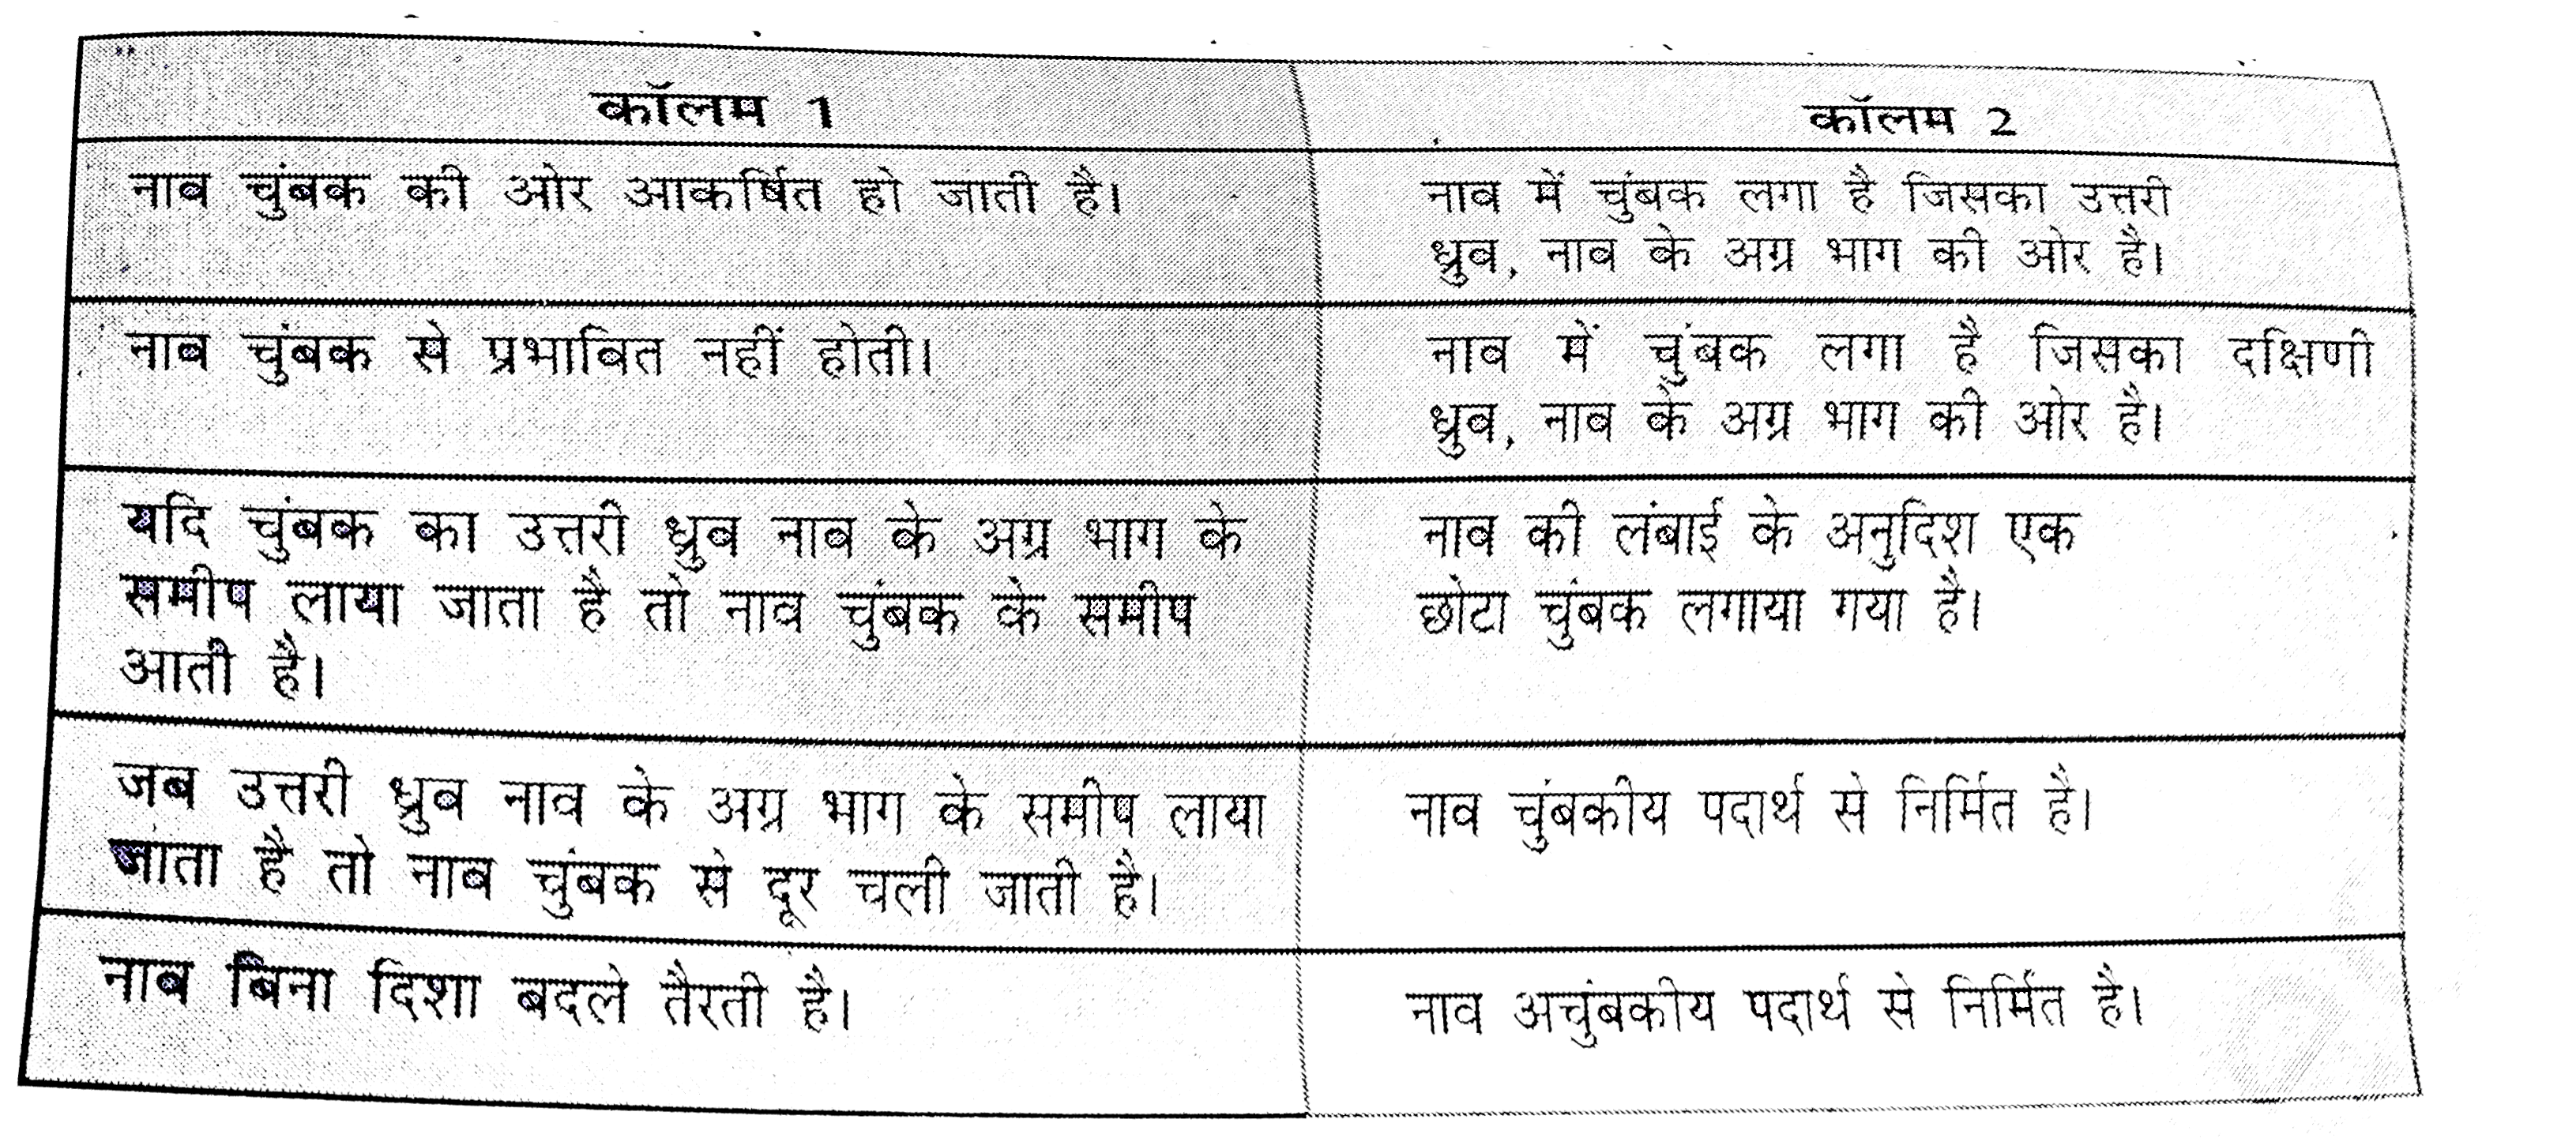 पानी के टब में तैरती एक खिलौना नाव के समीप विभिन्न दिशाओं से एक चुंबक लाया गया। प्रत्येक स्थिति में प्रेक्षित प्रभाव कॉलम 1 में तथा कारण कॉलम 2 में दिए गए हैं। कॉलम 1 में दिए गए कथनों का मिलान कॉलम 2 में दिए गए कथनों से कीजिए।